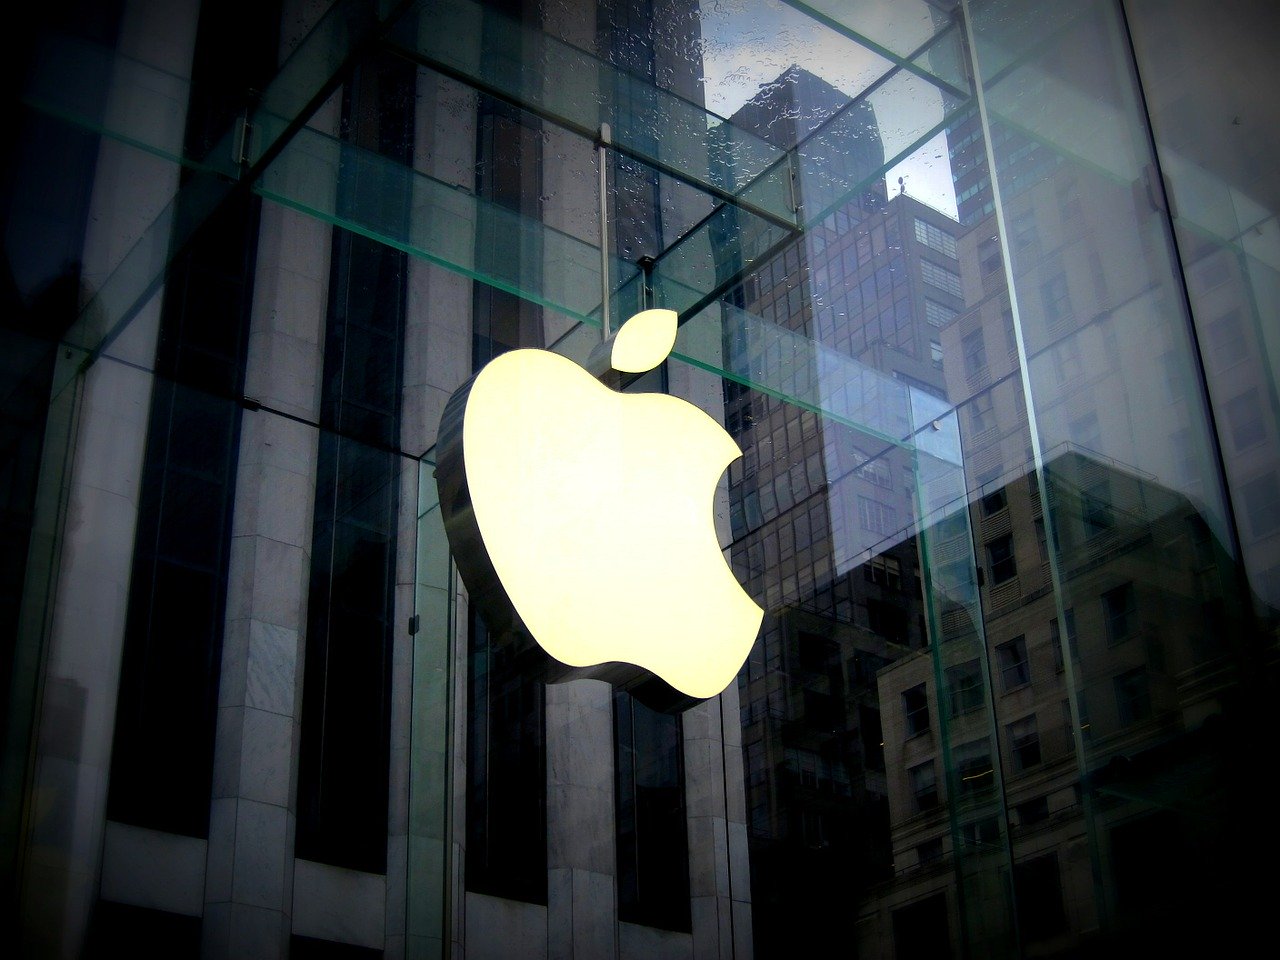 L'Autorité de la concurrence inflige à Apple une amende de plus d'1,1 milliard d'euros